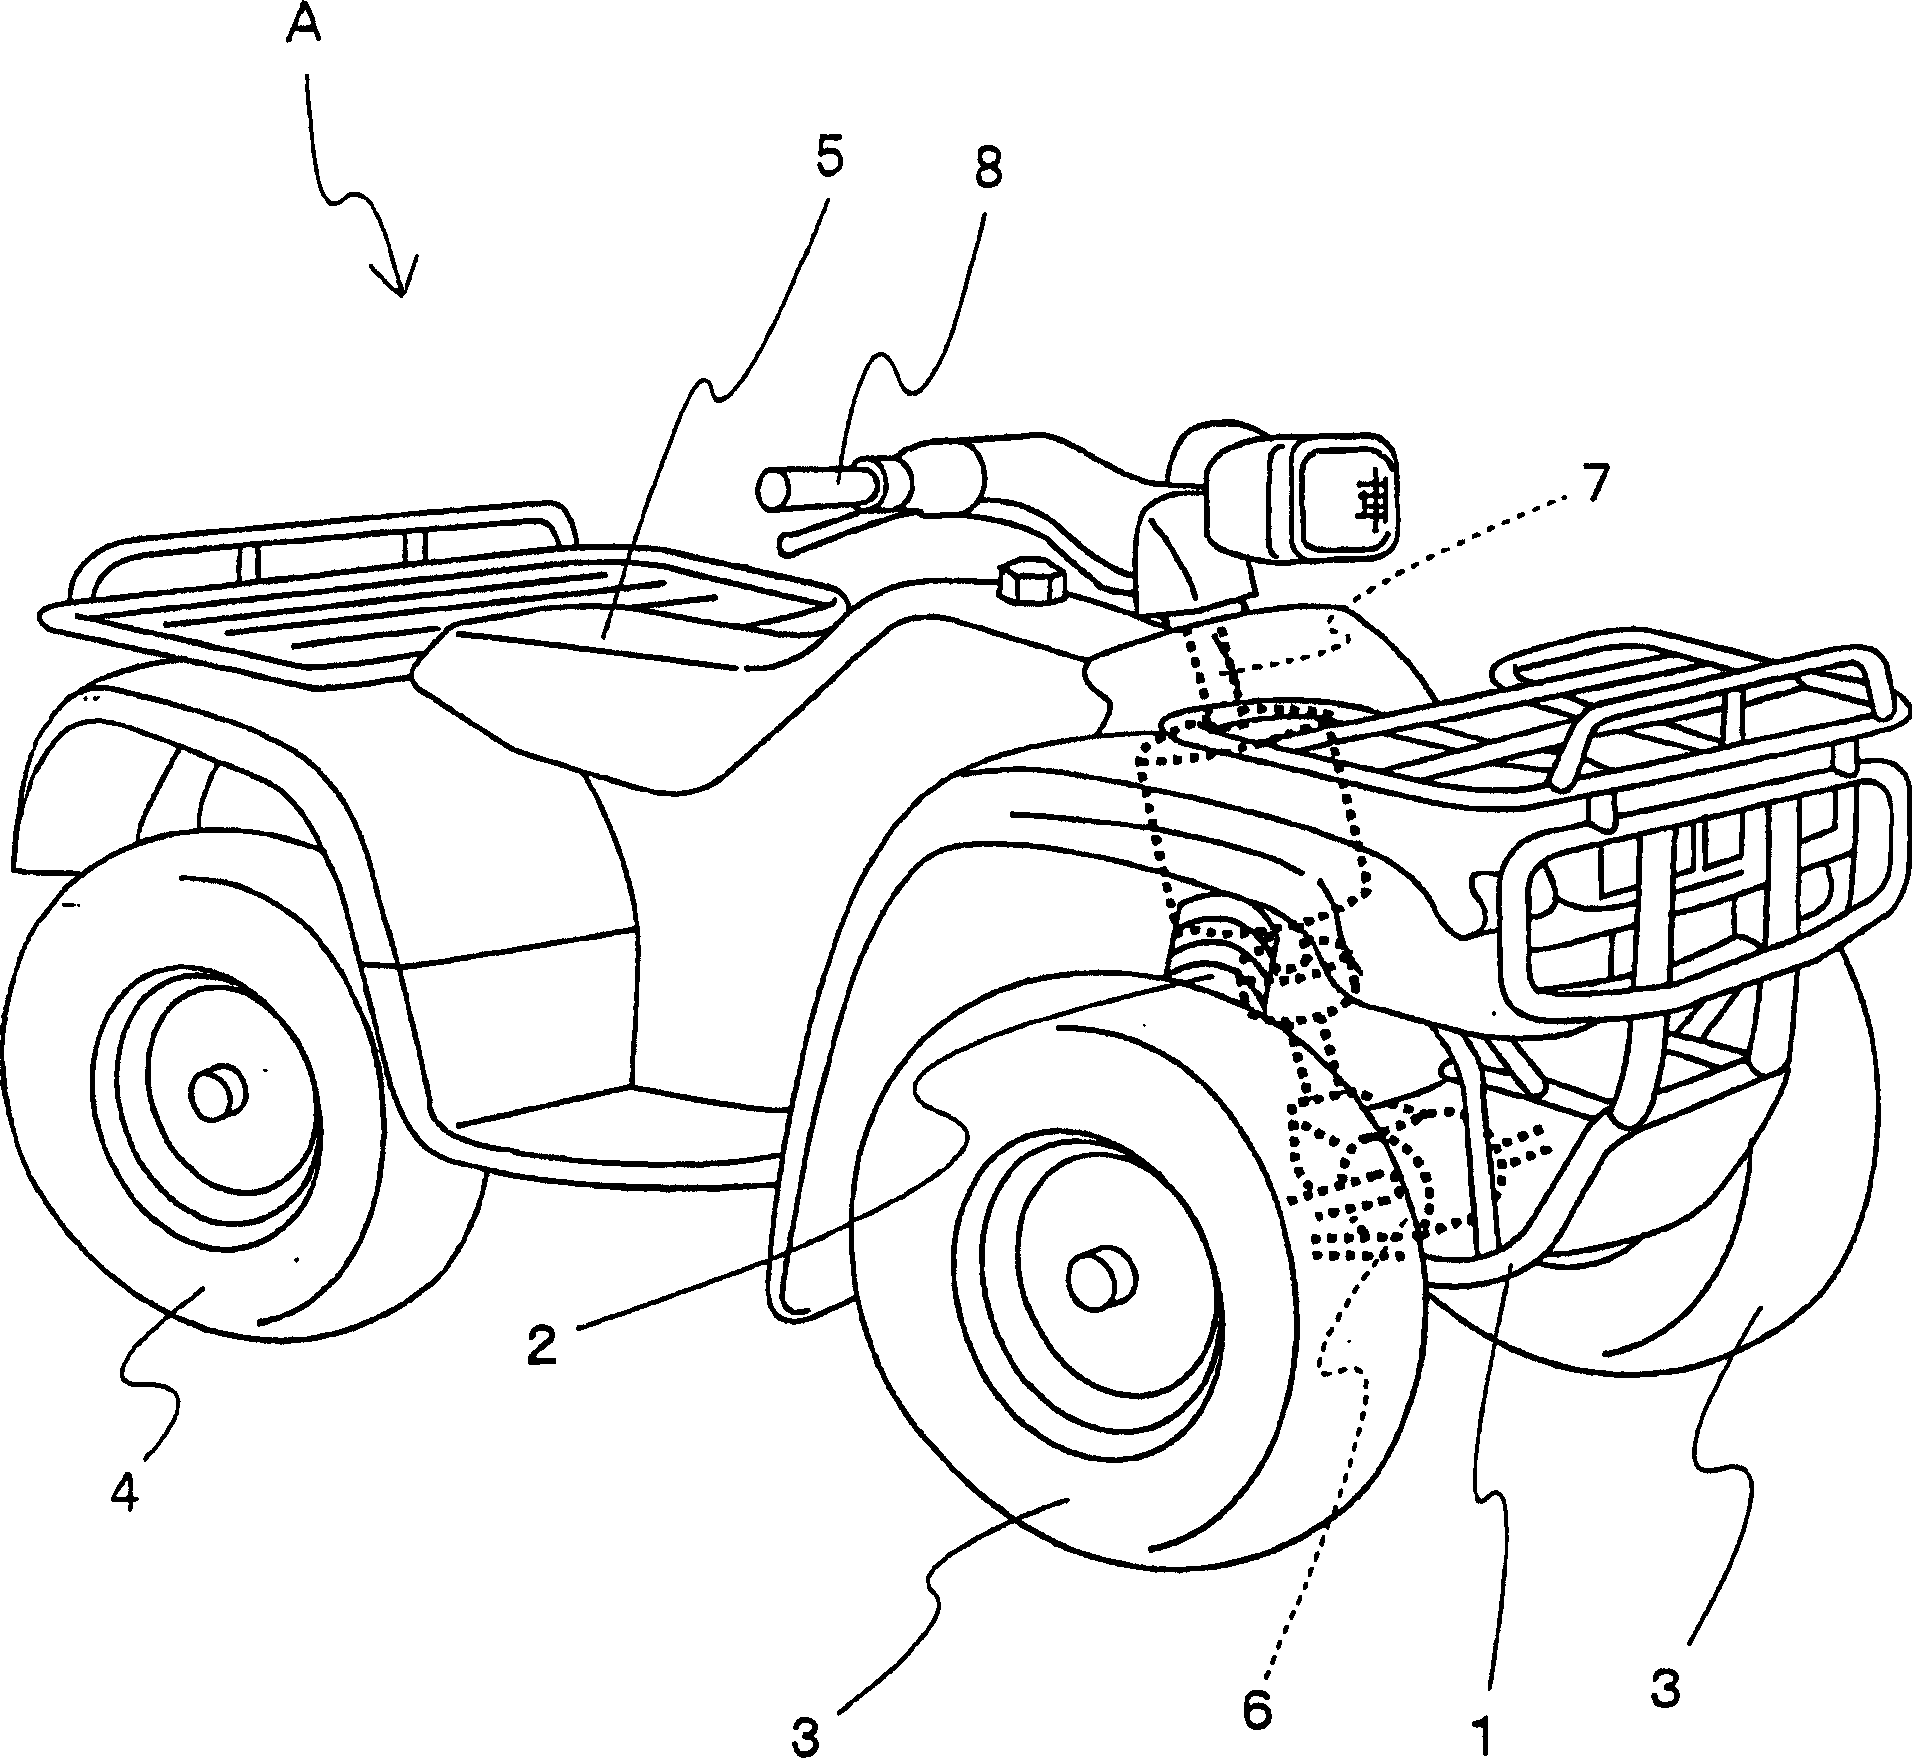 Power steering apparatus in vehicle having handlebar and vehicle having handlebar